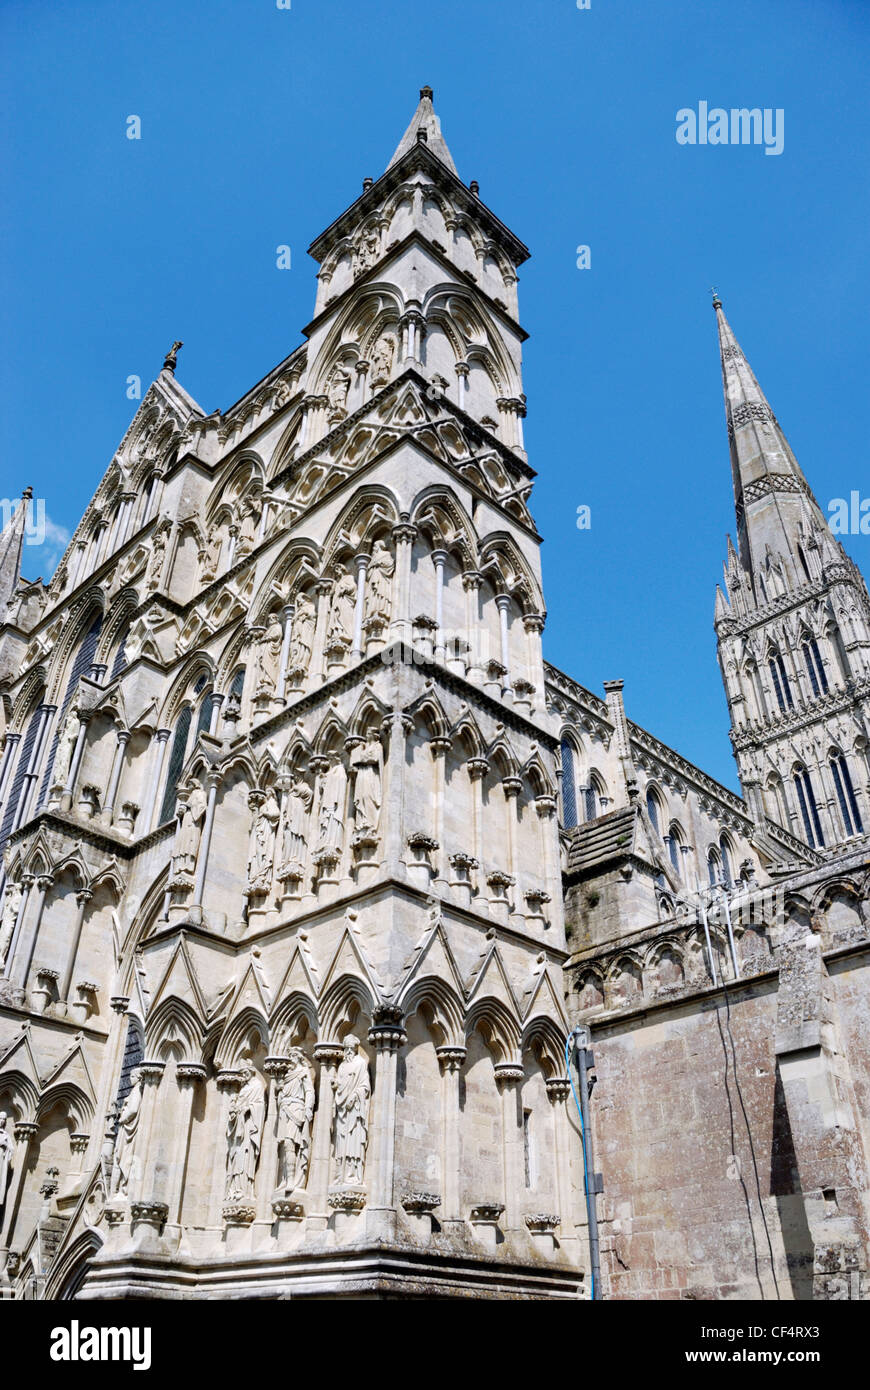 Les tours de la cathédrale de Salisbury, l'une des plus belles cathédrales médiévales en Grande-Bretagne. Banque D'Images